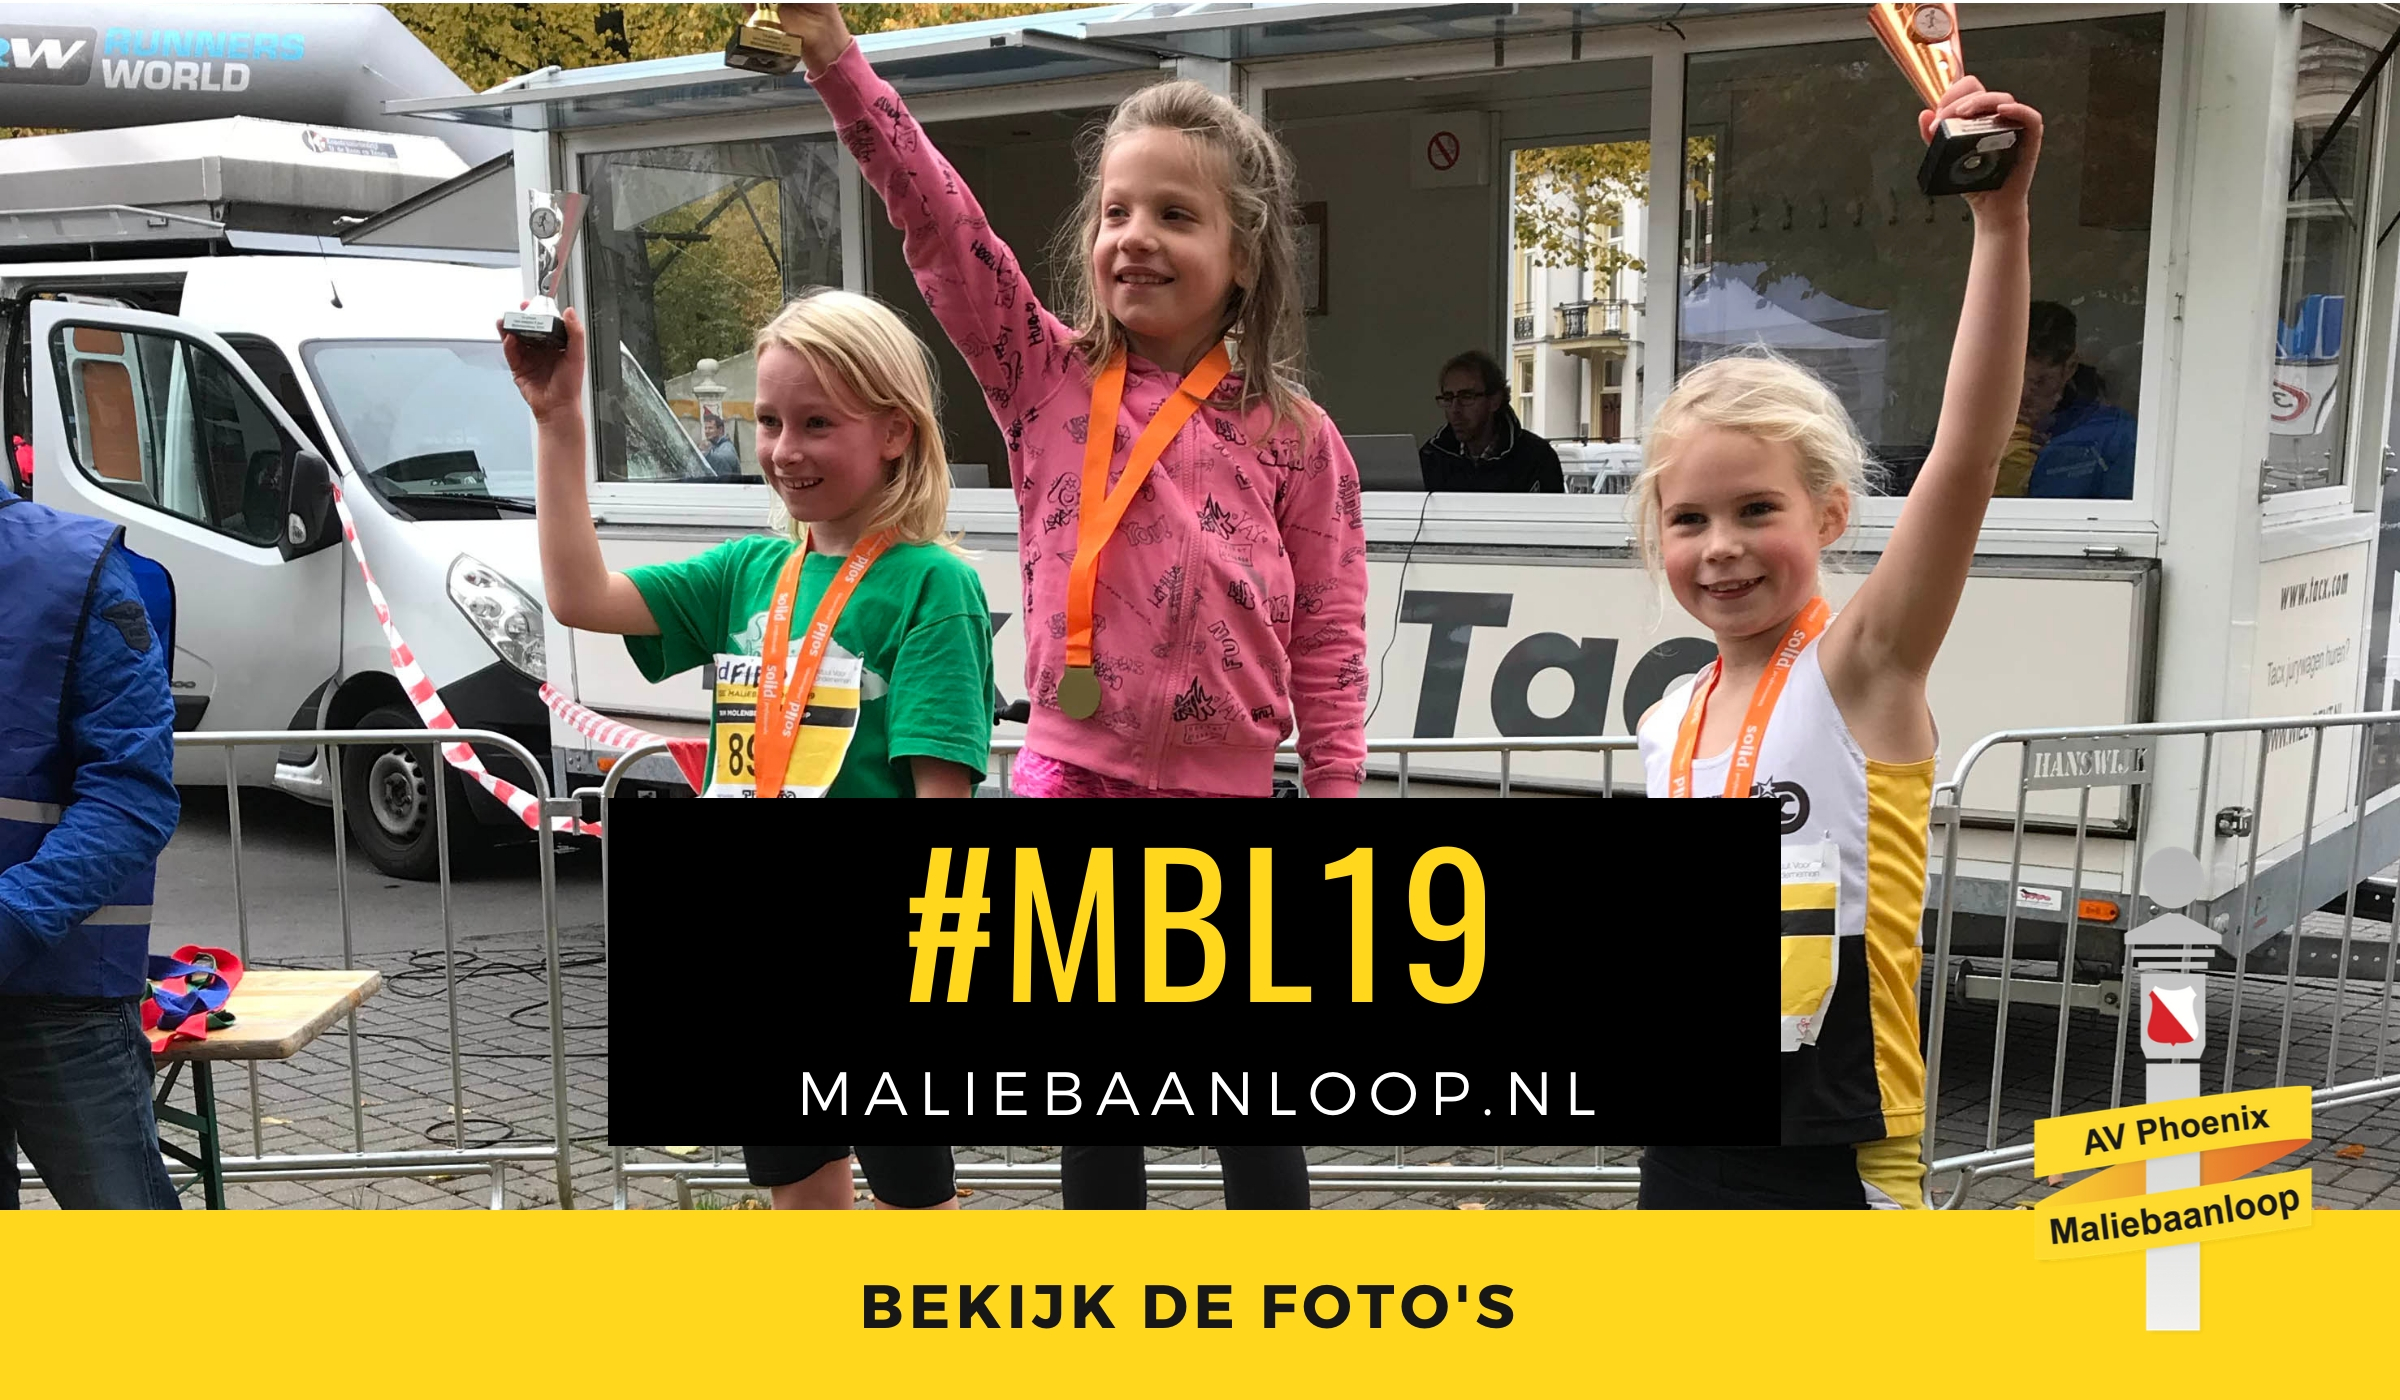 foto's maliebaanloop 2019